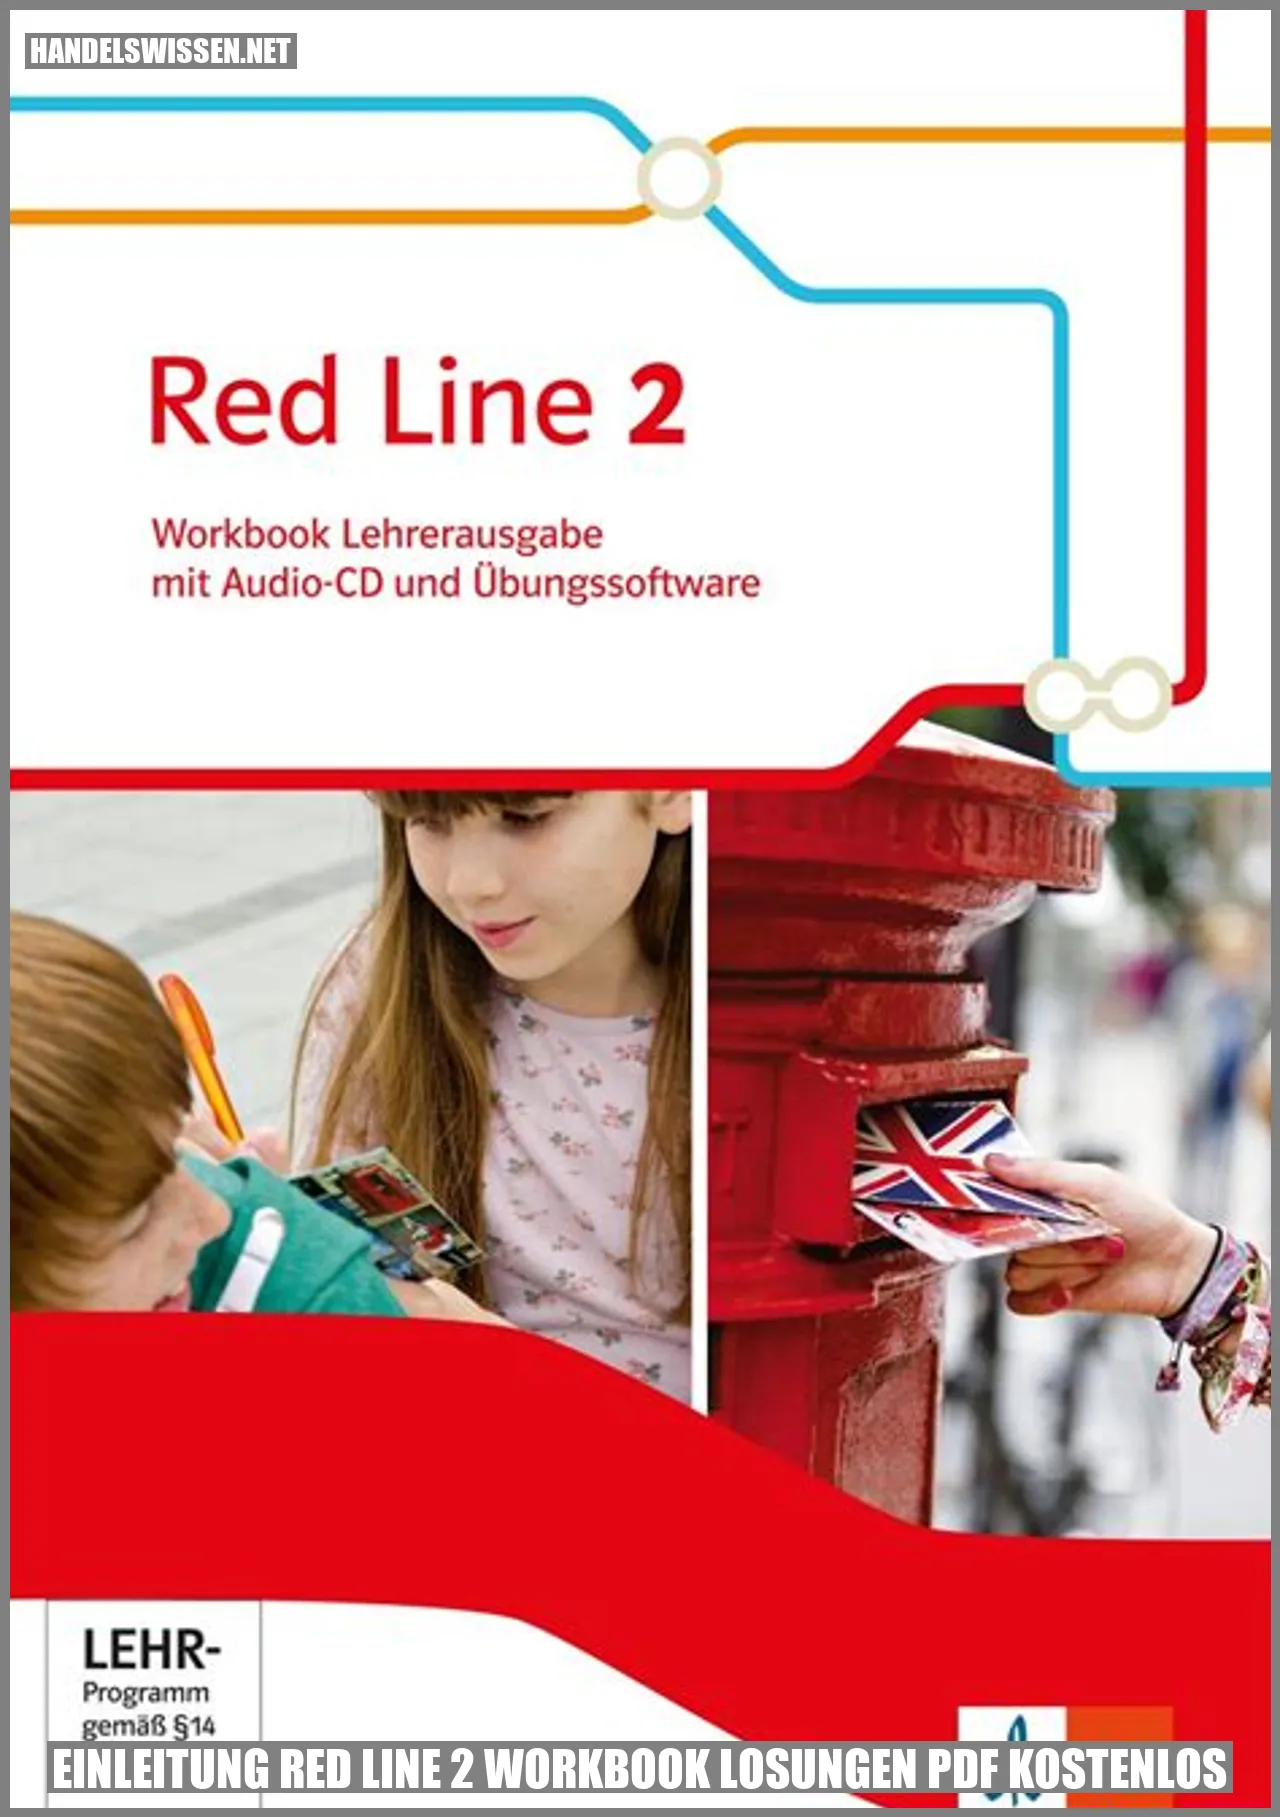 Einleitung Red Line 2 Workbook Lösungen PDF kostenlos